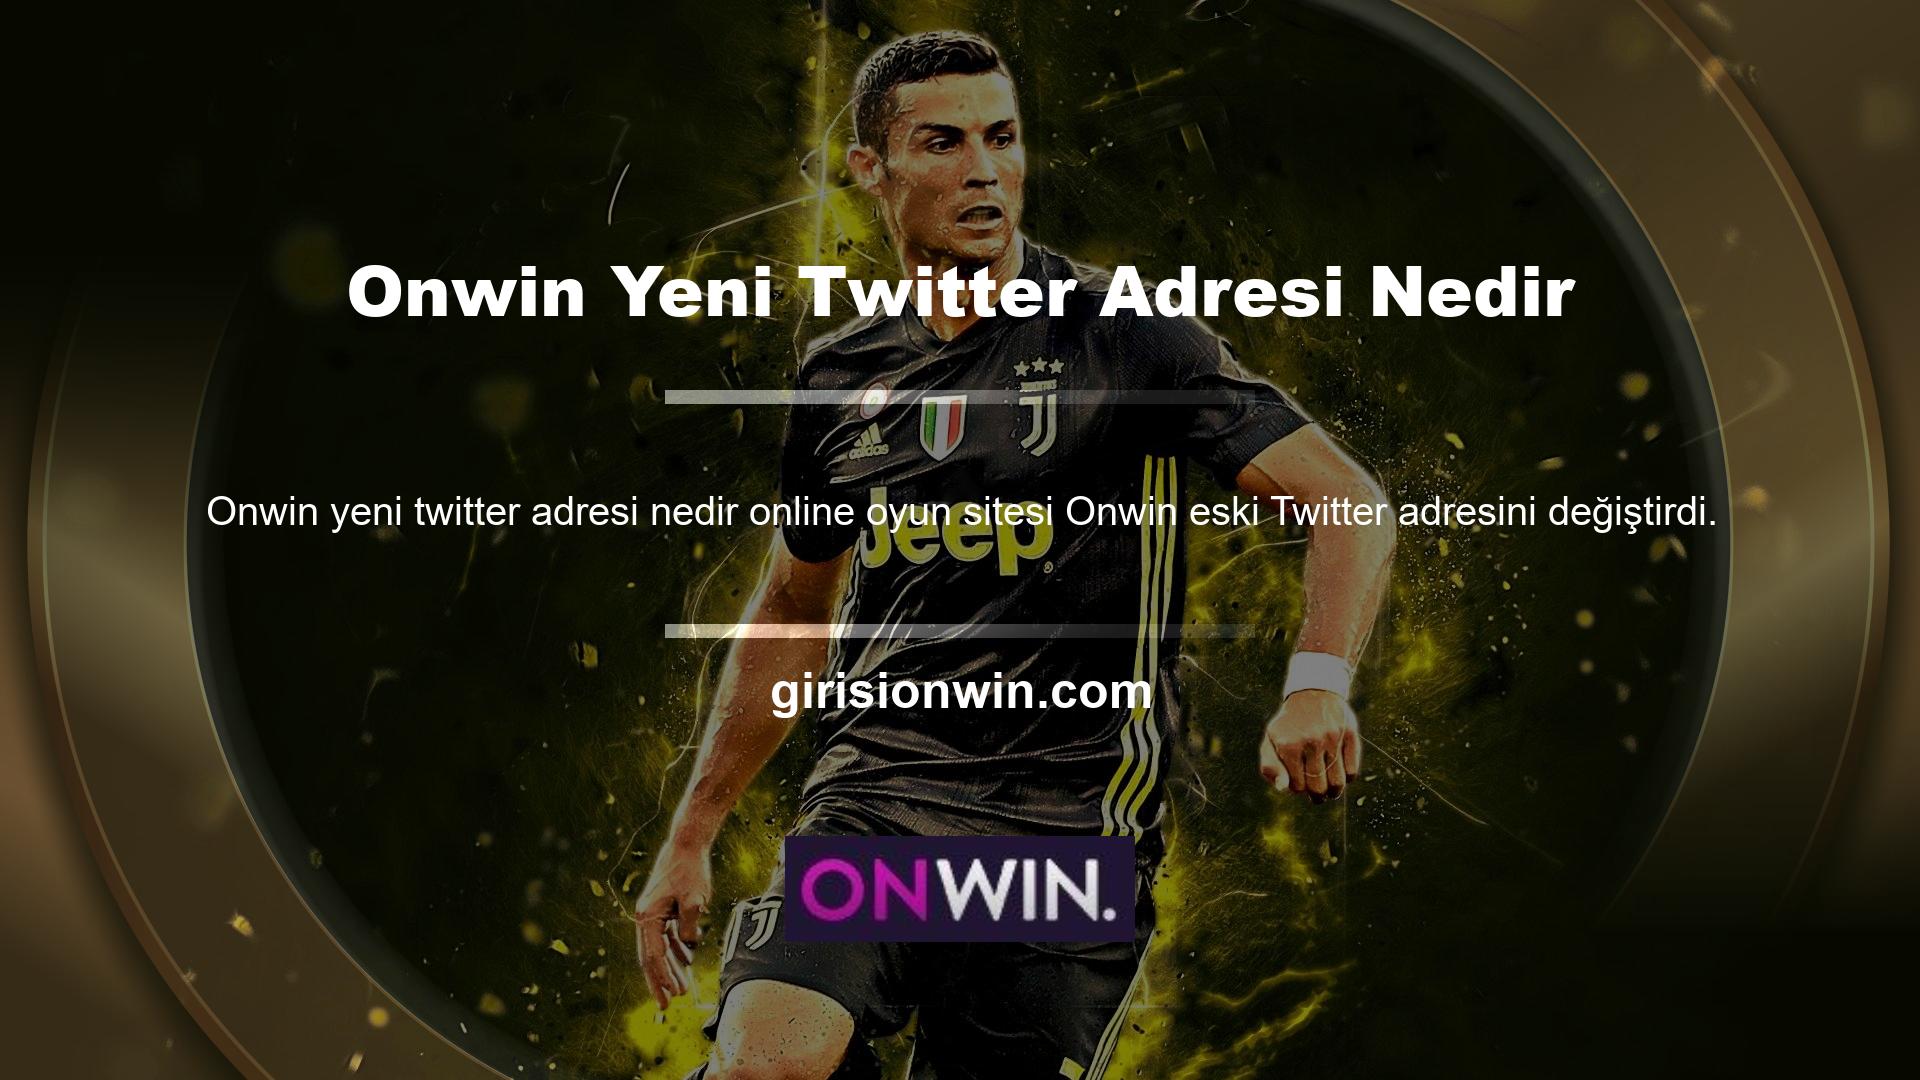 Güncel Web Sitesi Twitter Adresi: Onwin Lütfen bu adresi takip ederek sitemizi takip edin ve paylaşın